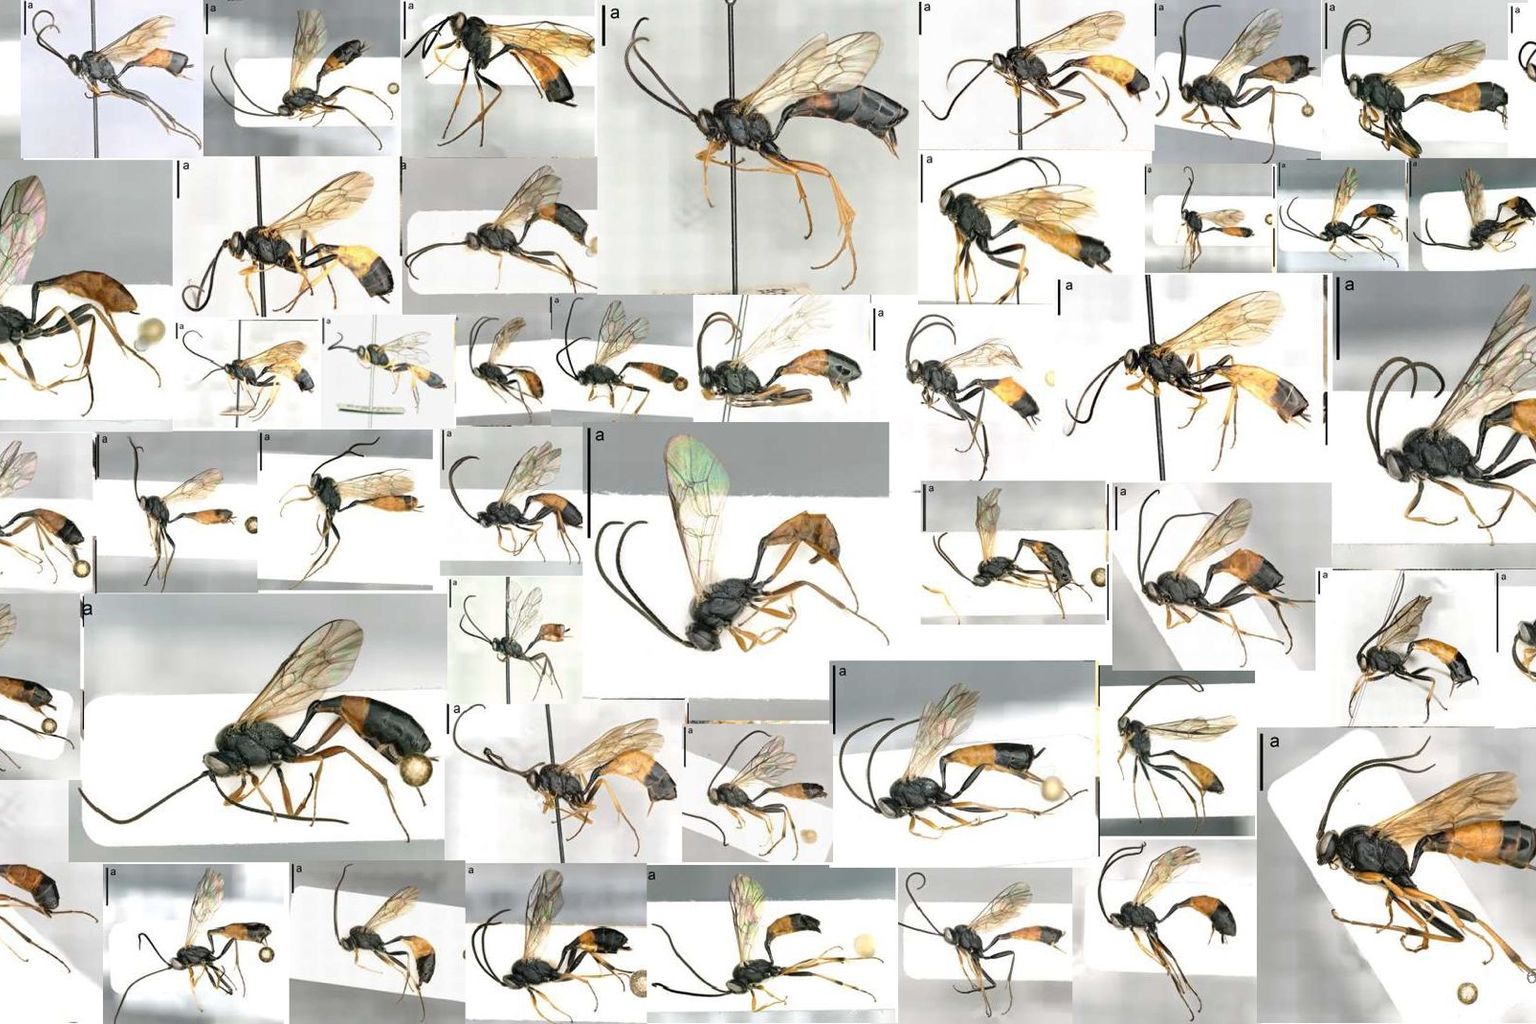 Alleine in die Gattung Dusona kommen in der Schweiz viele verschiedene Arten an Darwin-Wespen vor.